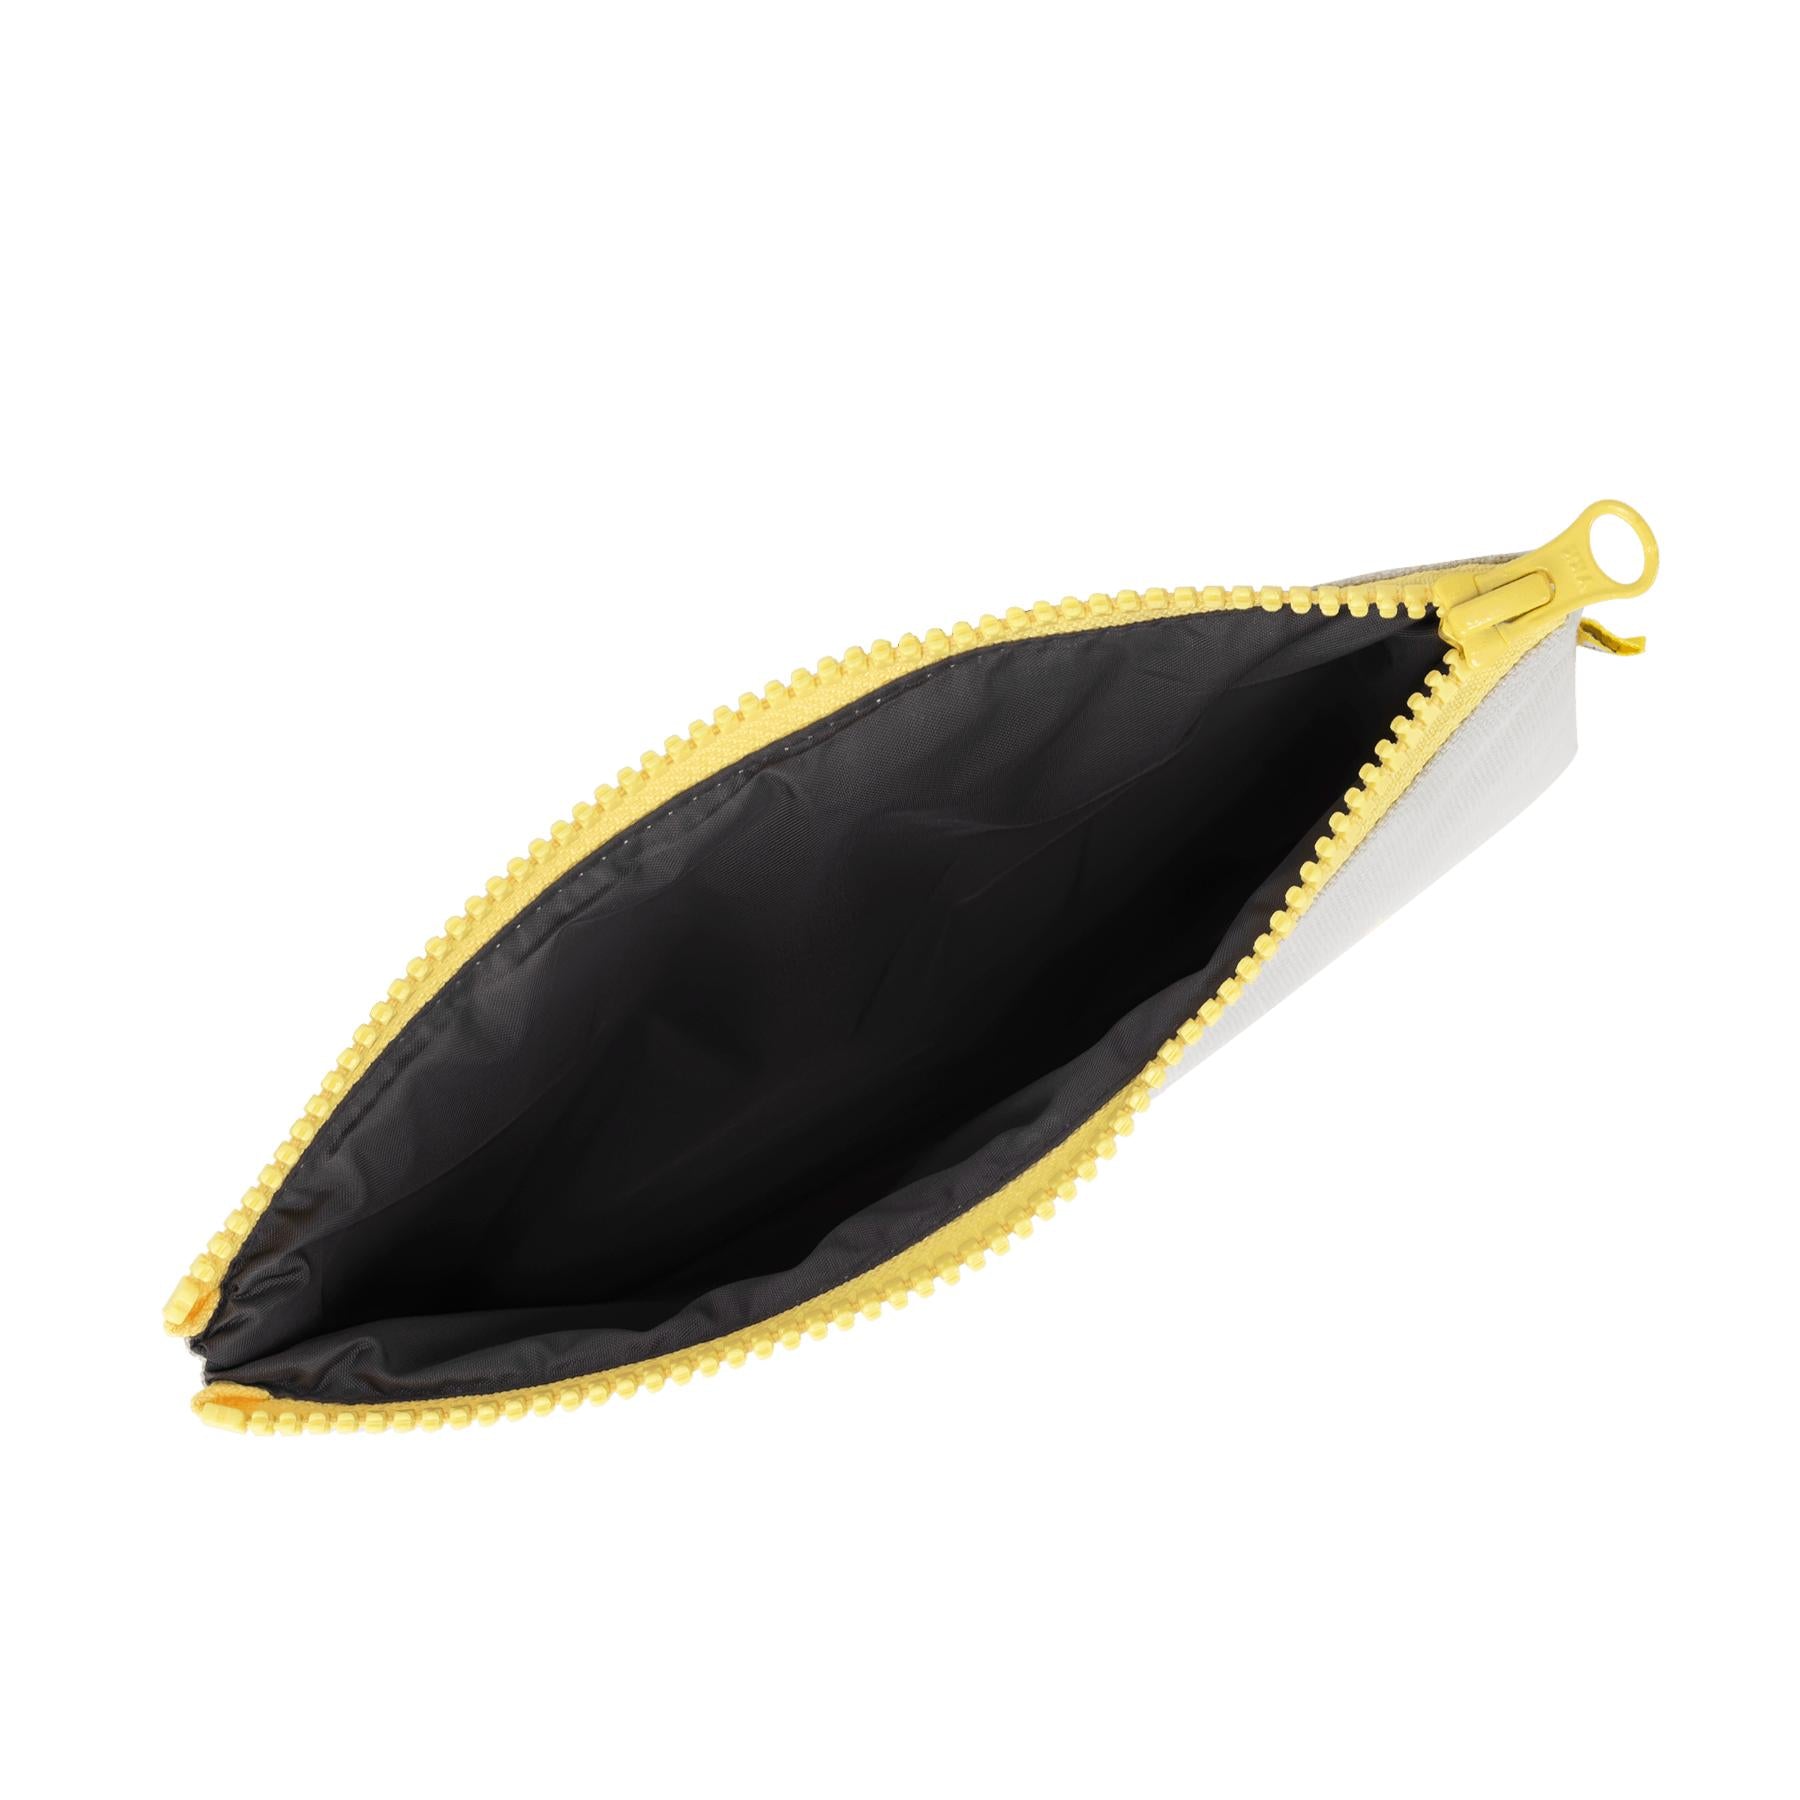 Zip Snack Bag - 'Snack' Black (Snack Size)